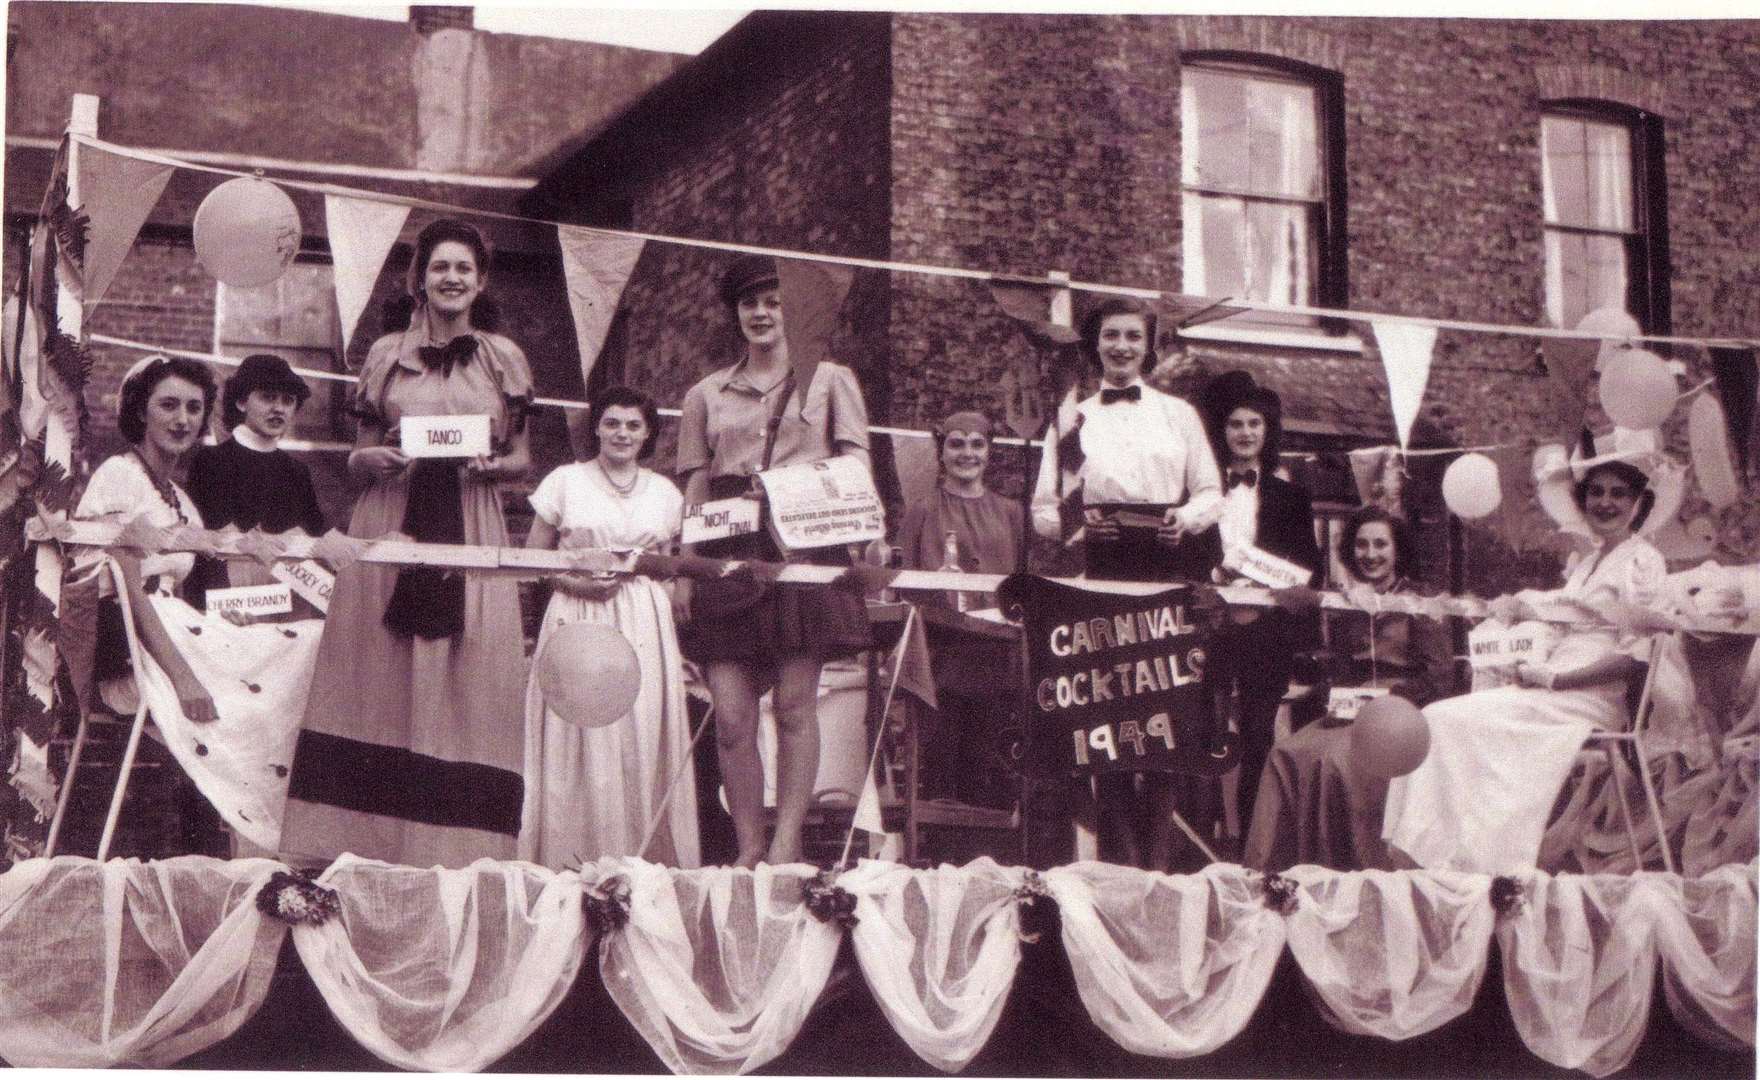 A Carnival float in 1949